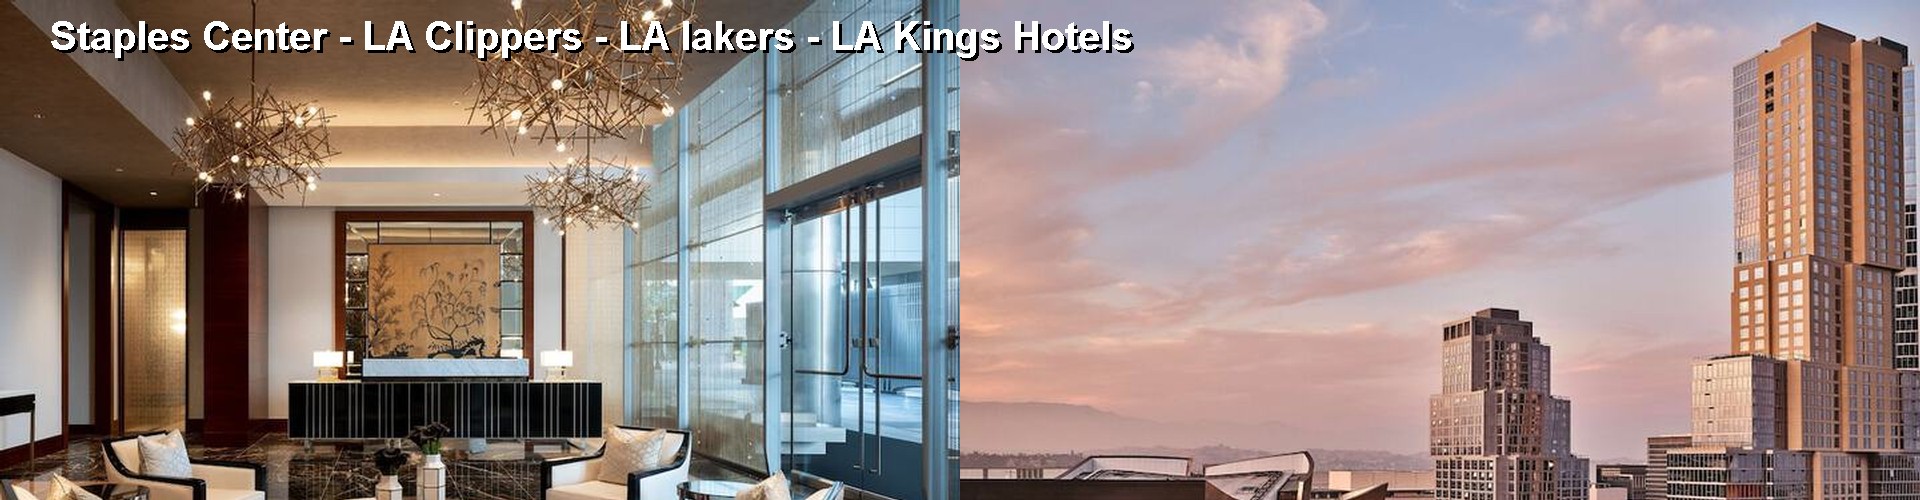 5 Best Hotels near Staples Center - LA Clippers - LA lakers - LA Kings